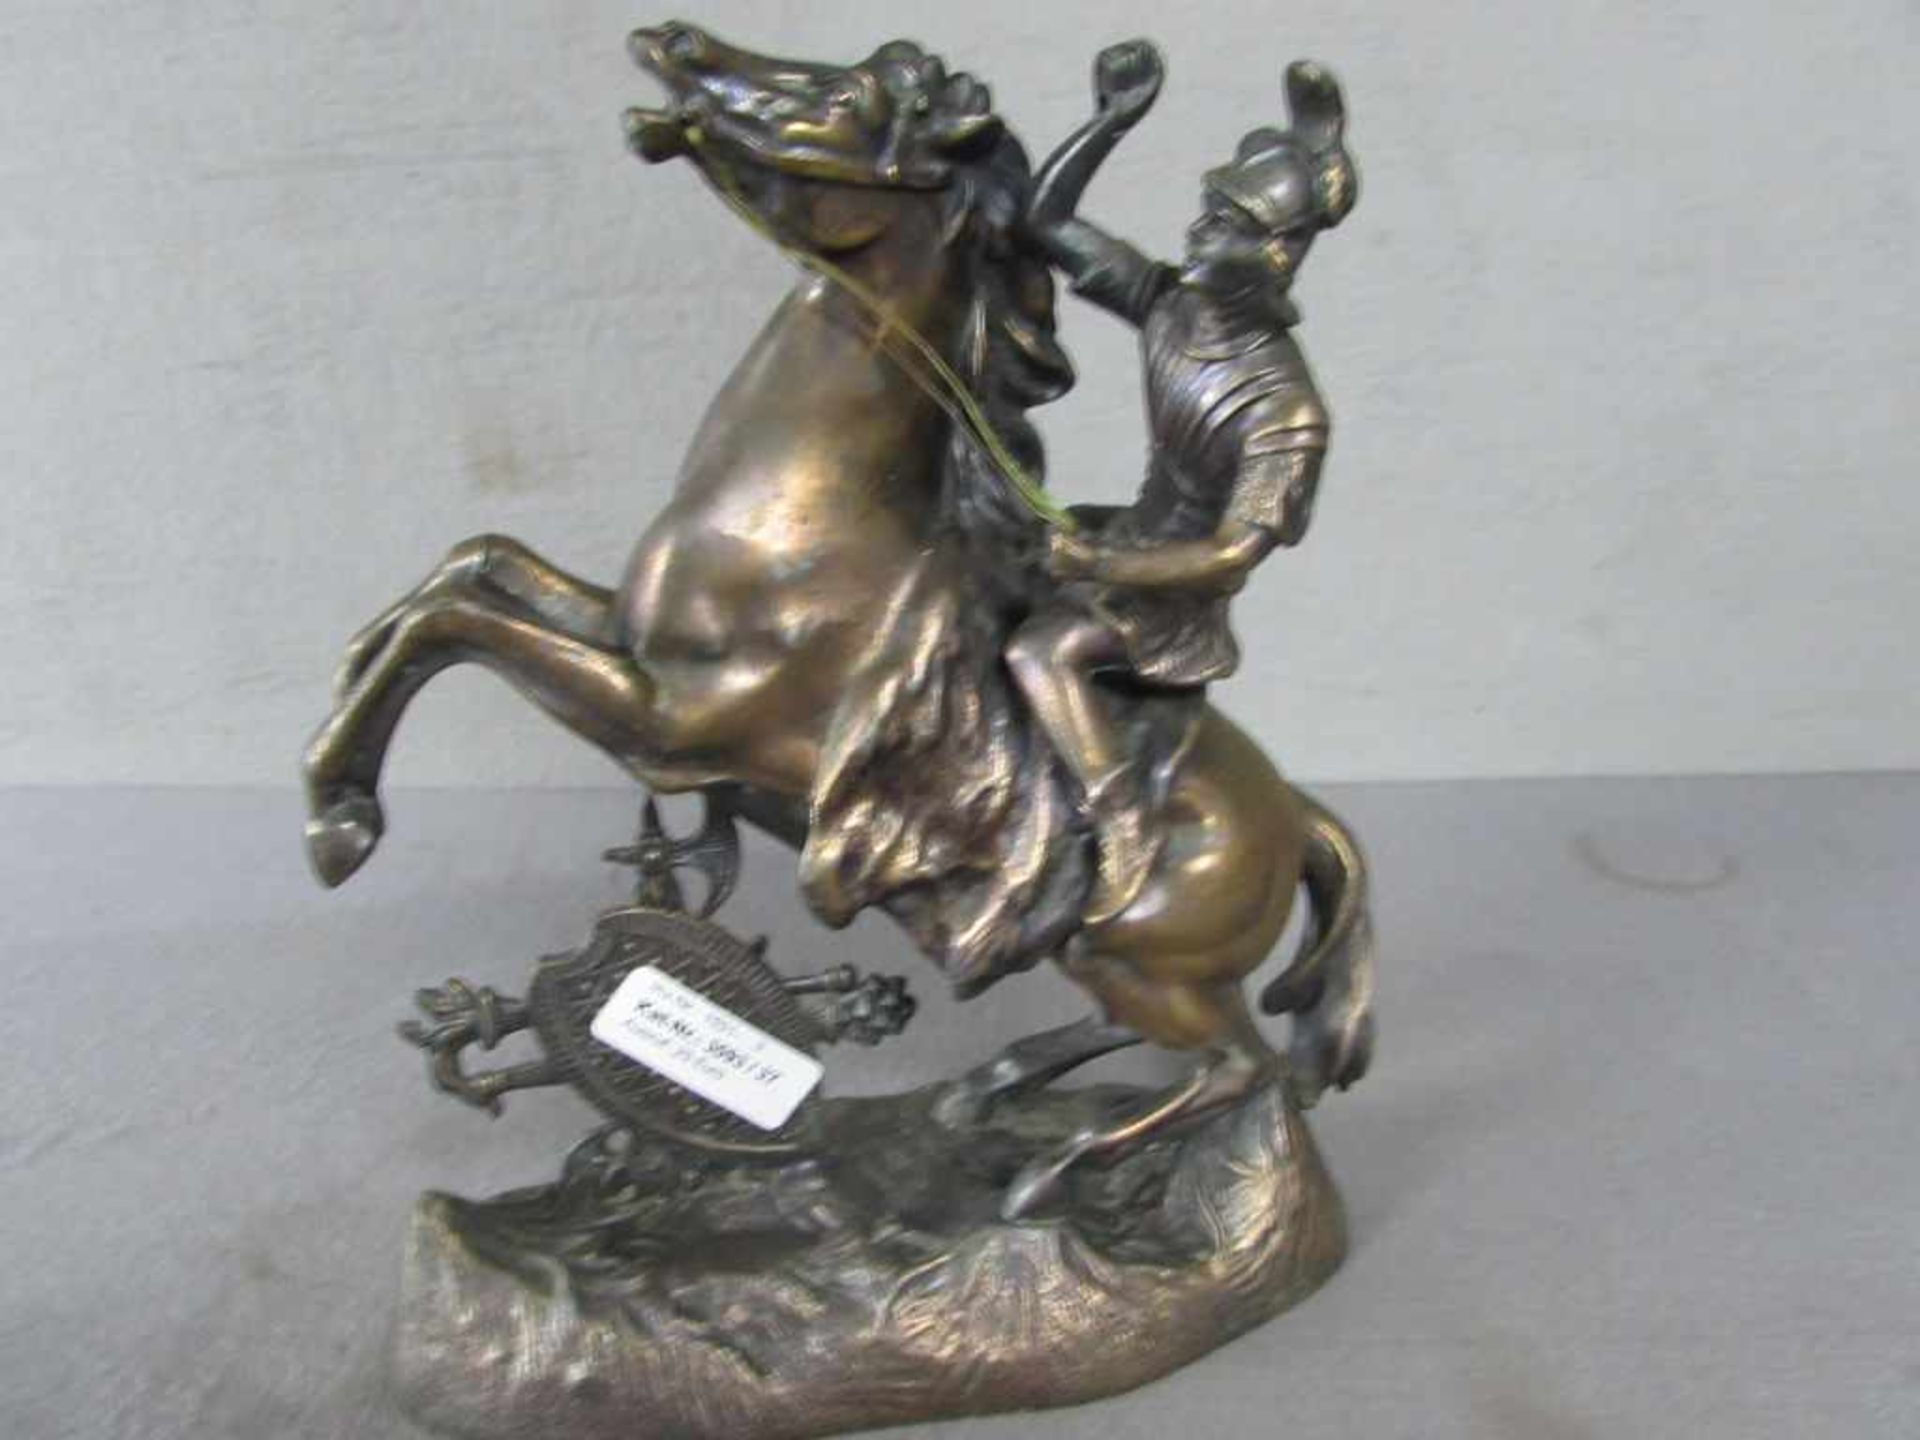 Skulptur Metall Kämpfer auf aufsteigendem Pferd 28cm hoch - Image 2 of 3